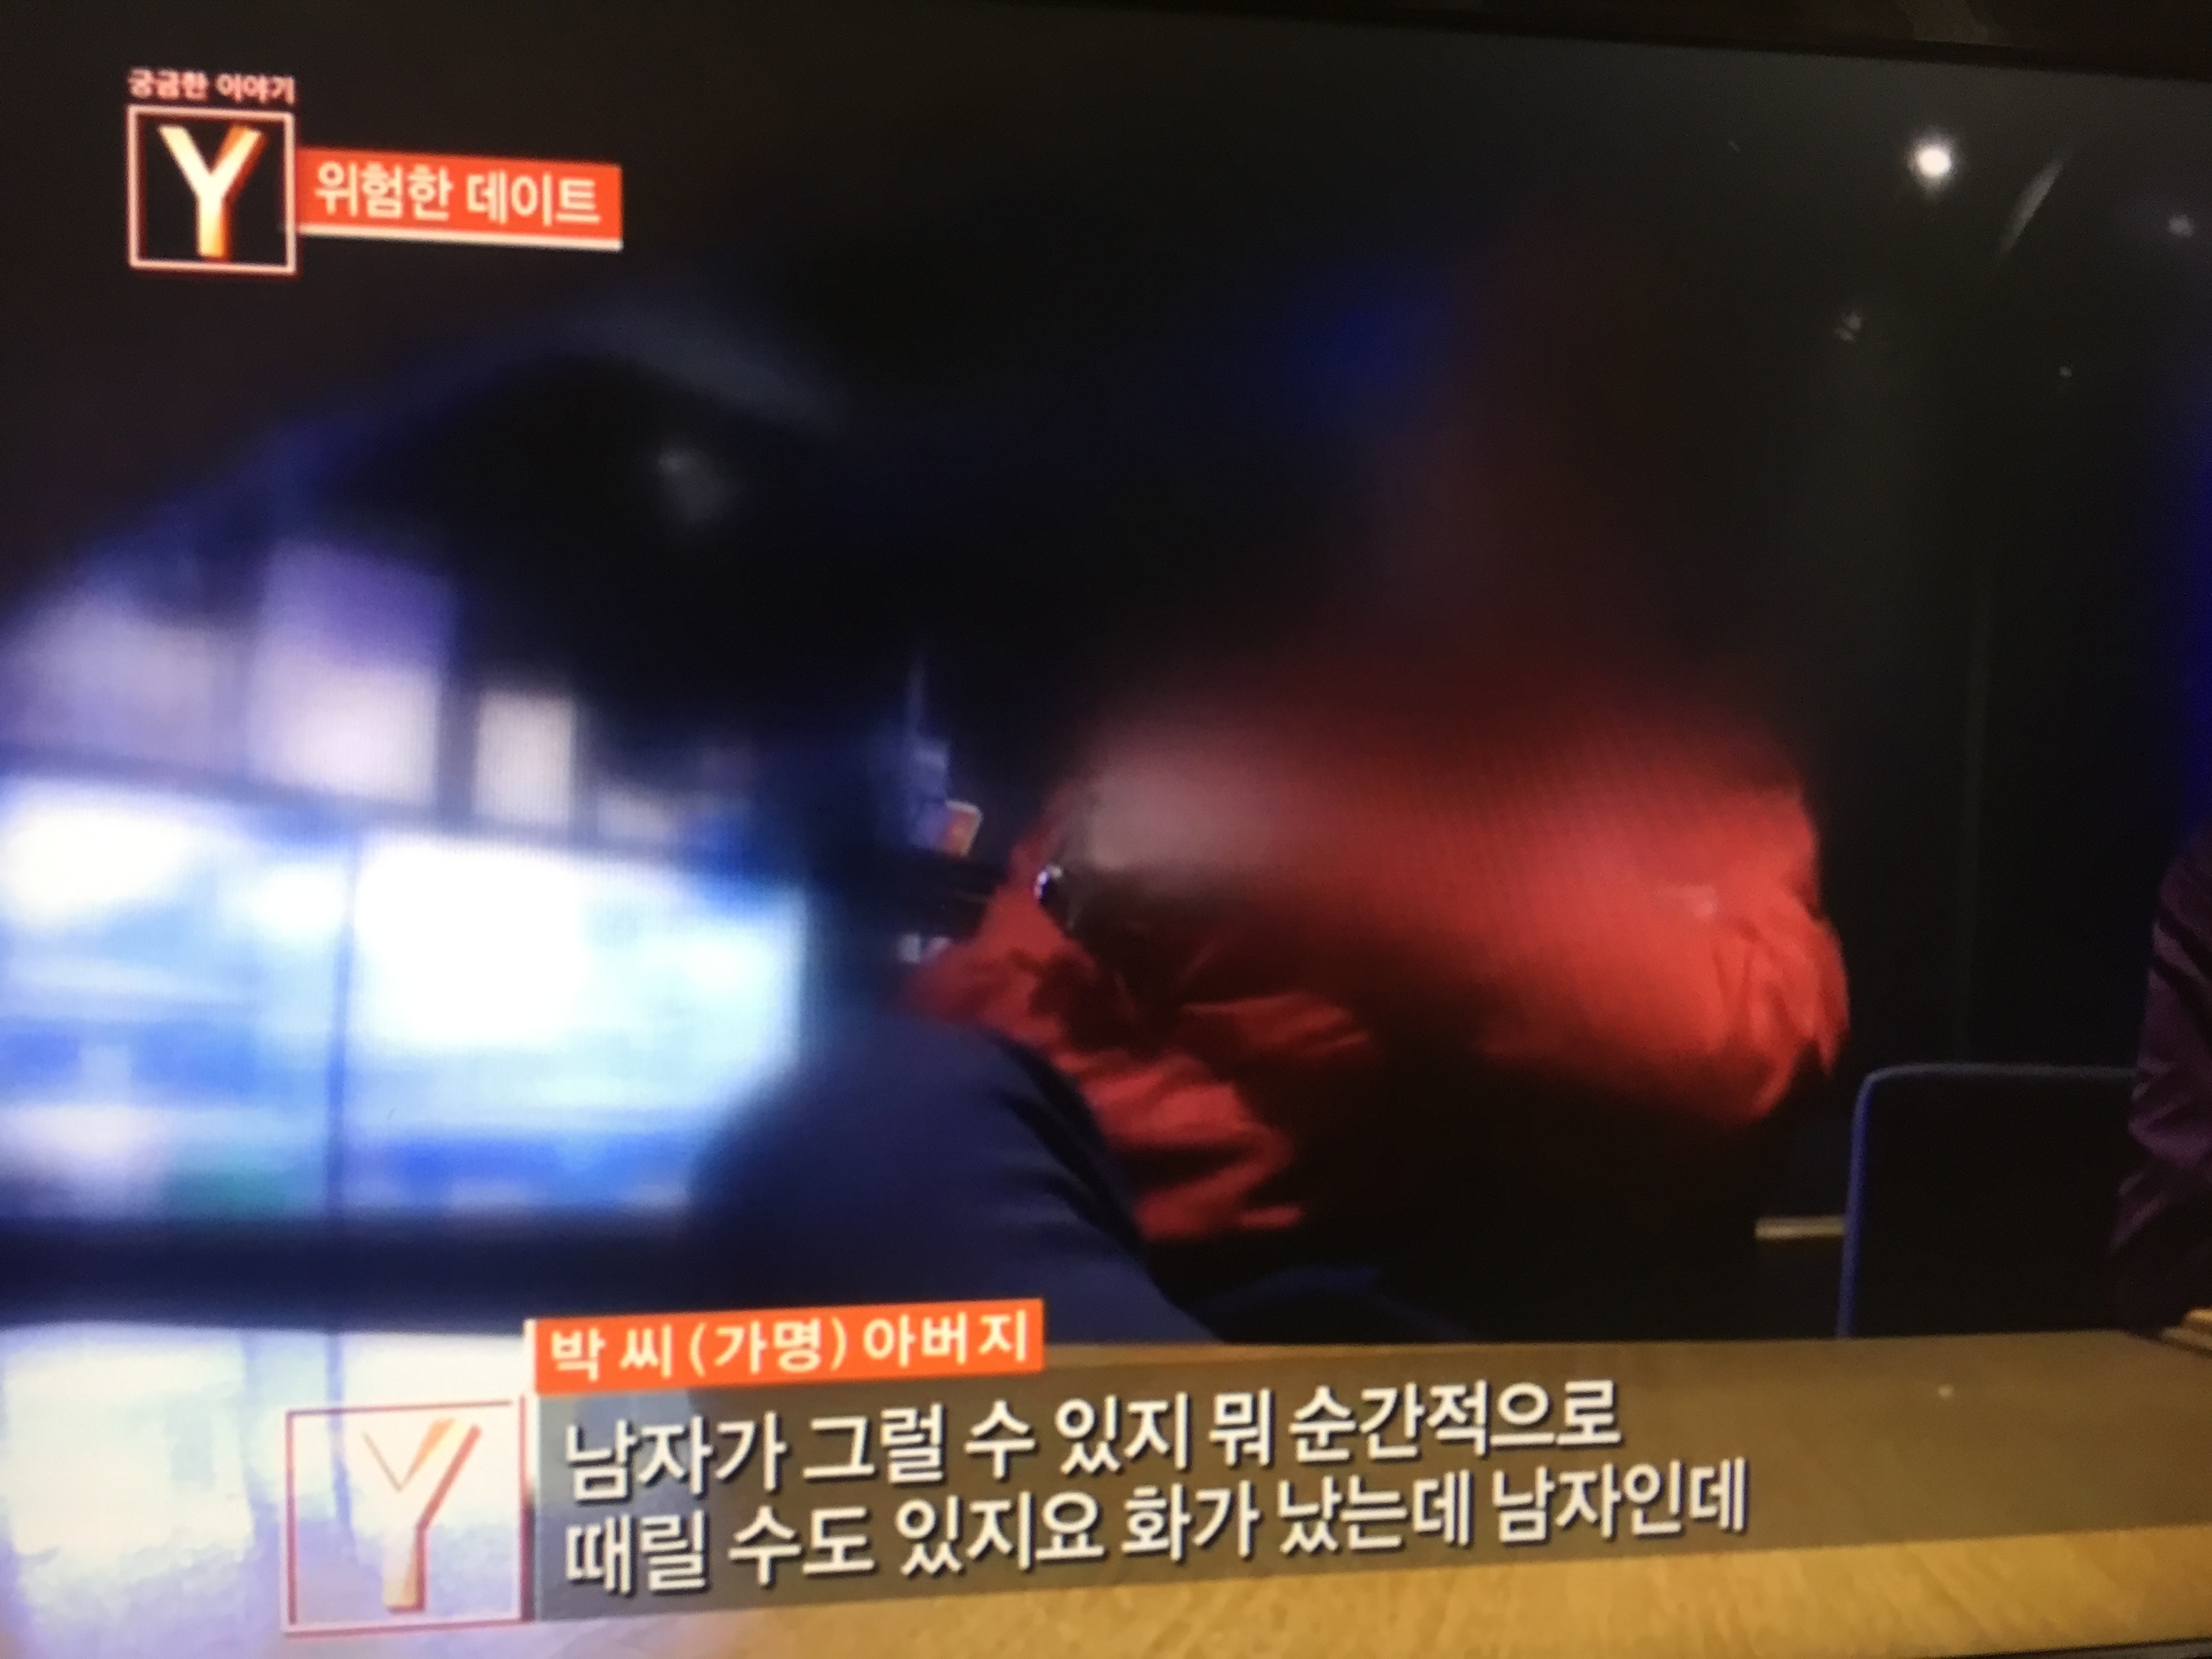 [대한민국청소년기자단] 2. '남자가 그럴 수 있지', 피해자 가슴에 비수 꽂는 한마디 (이미지 촬영).JPG